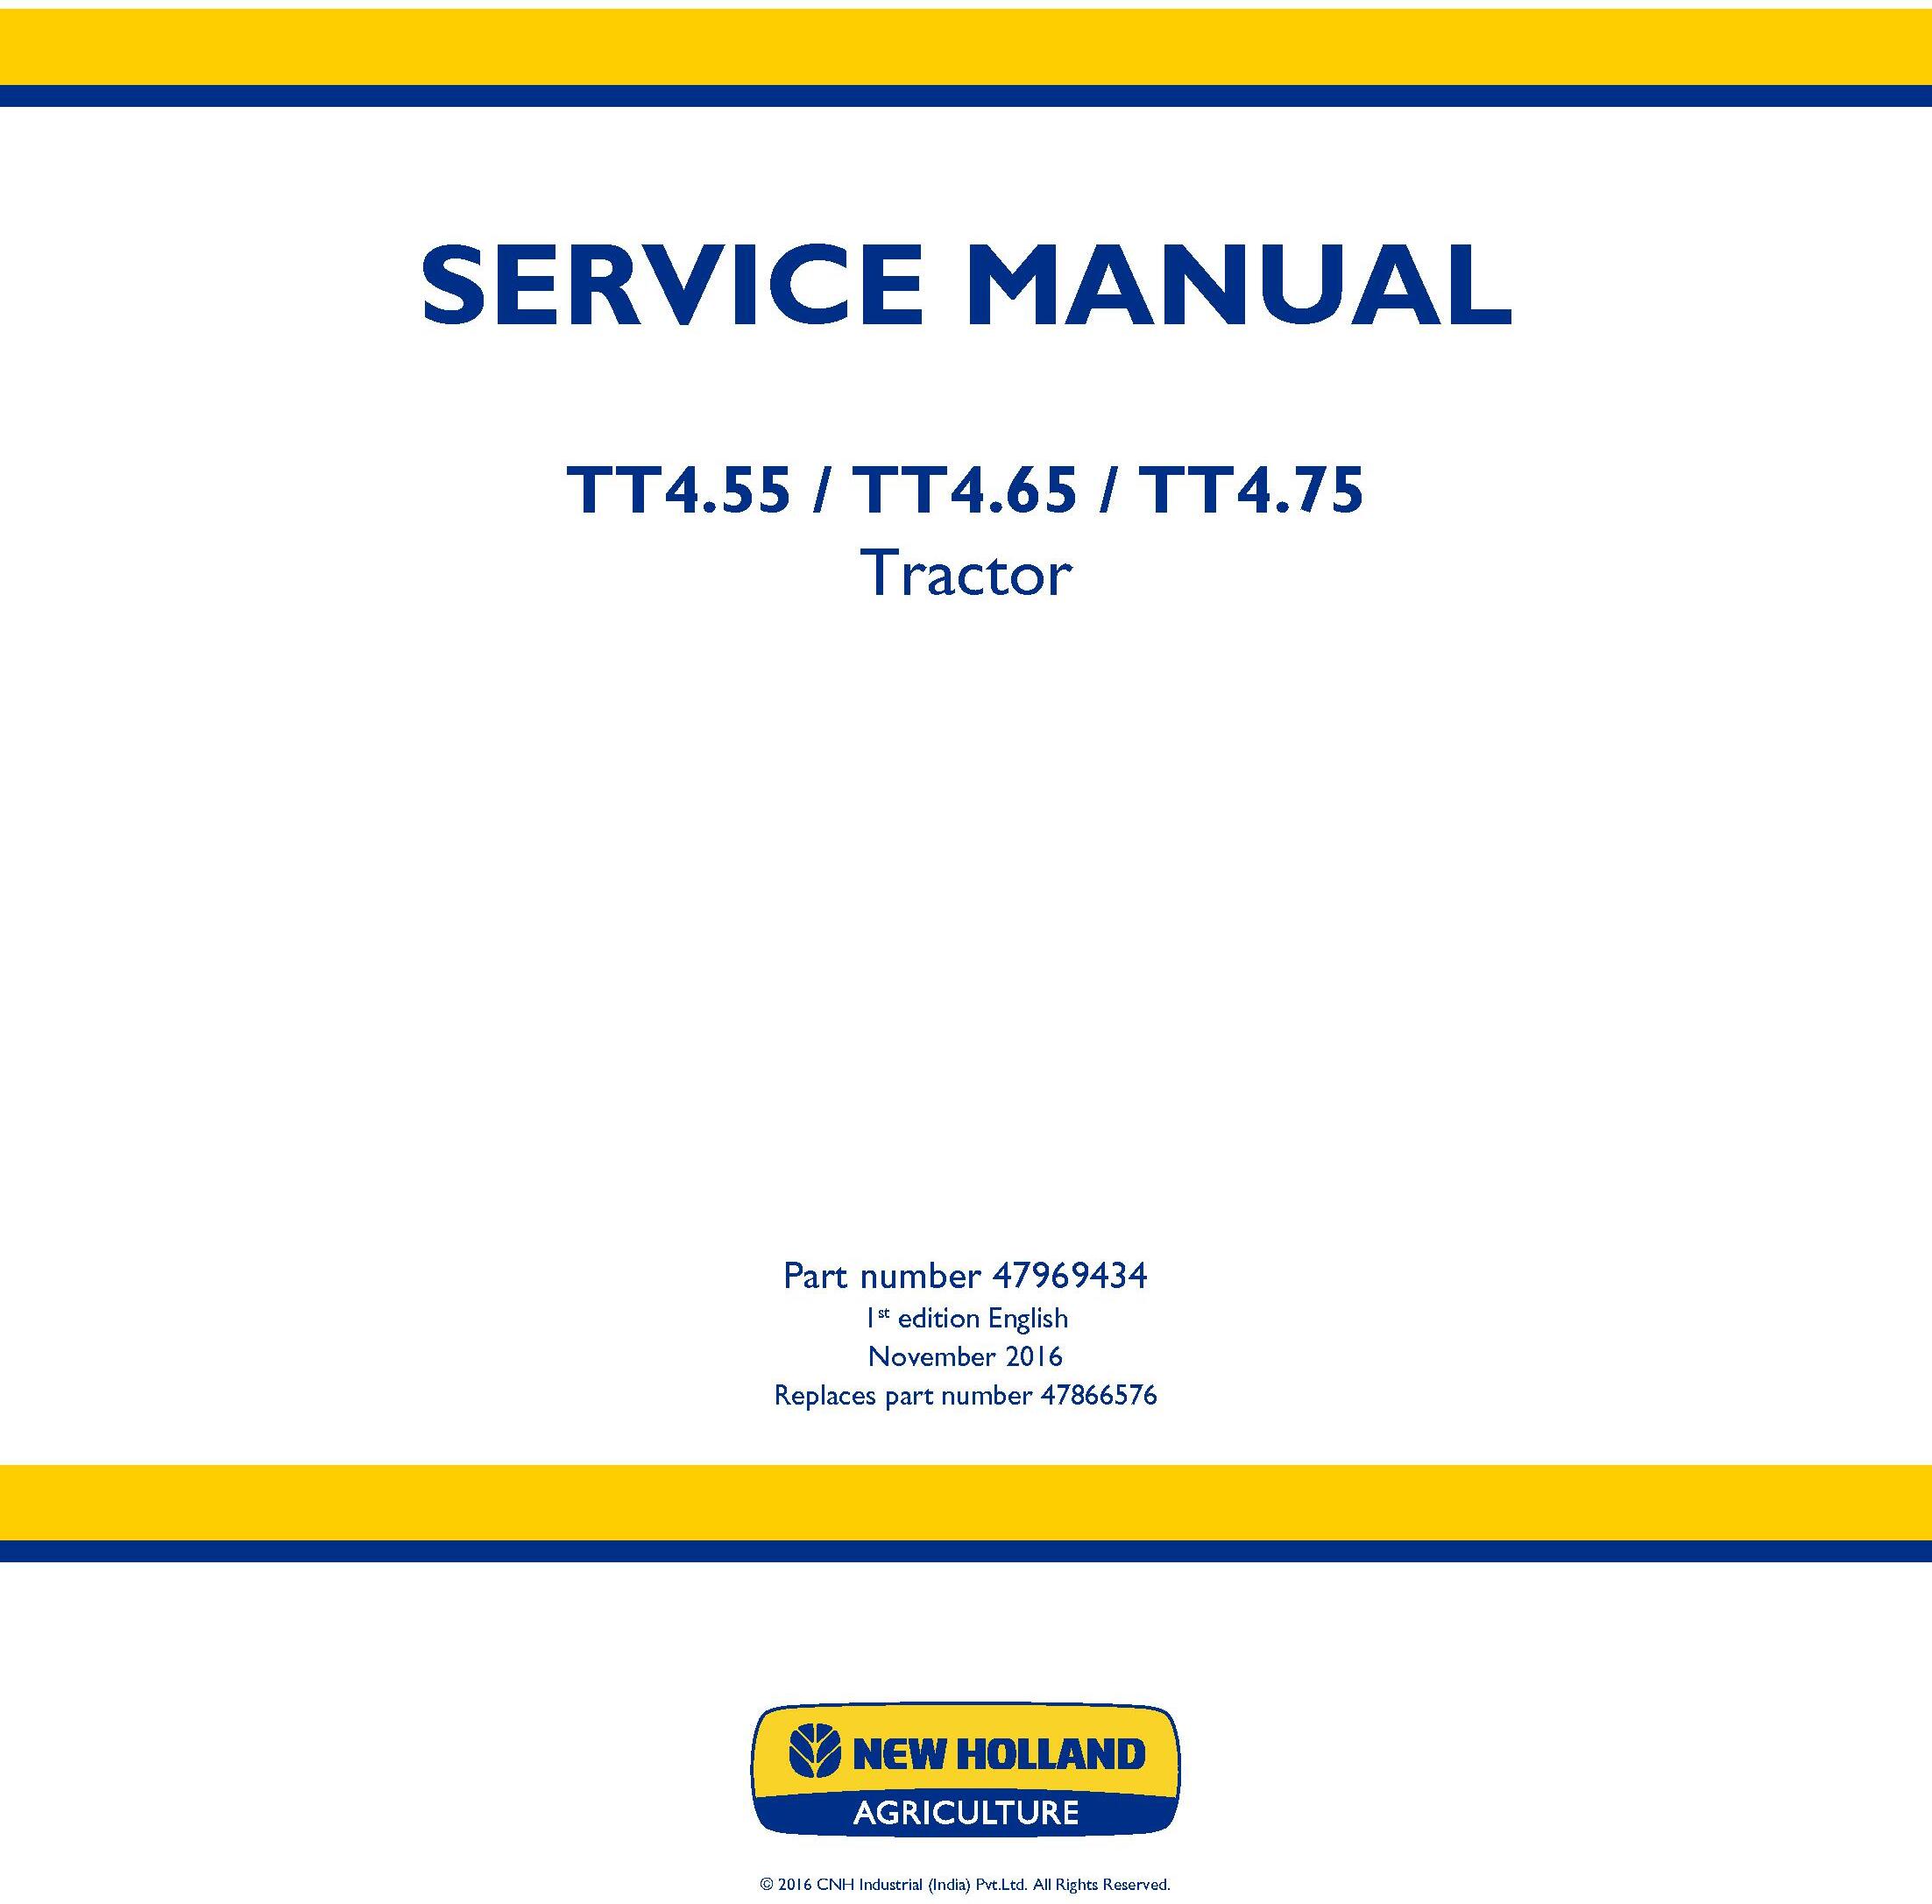 New Holland TT4.55, TT4.65, TT4.75 Tier 3 Tractor Service Manual - 19473